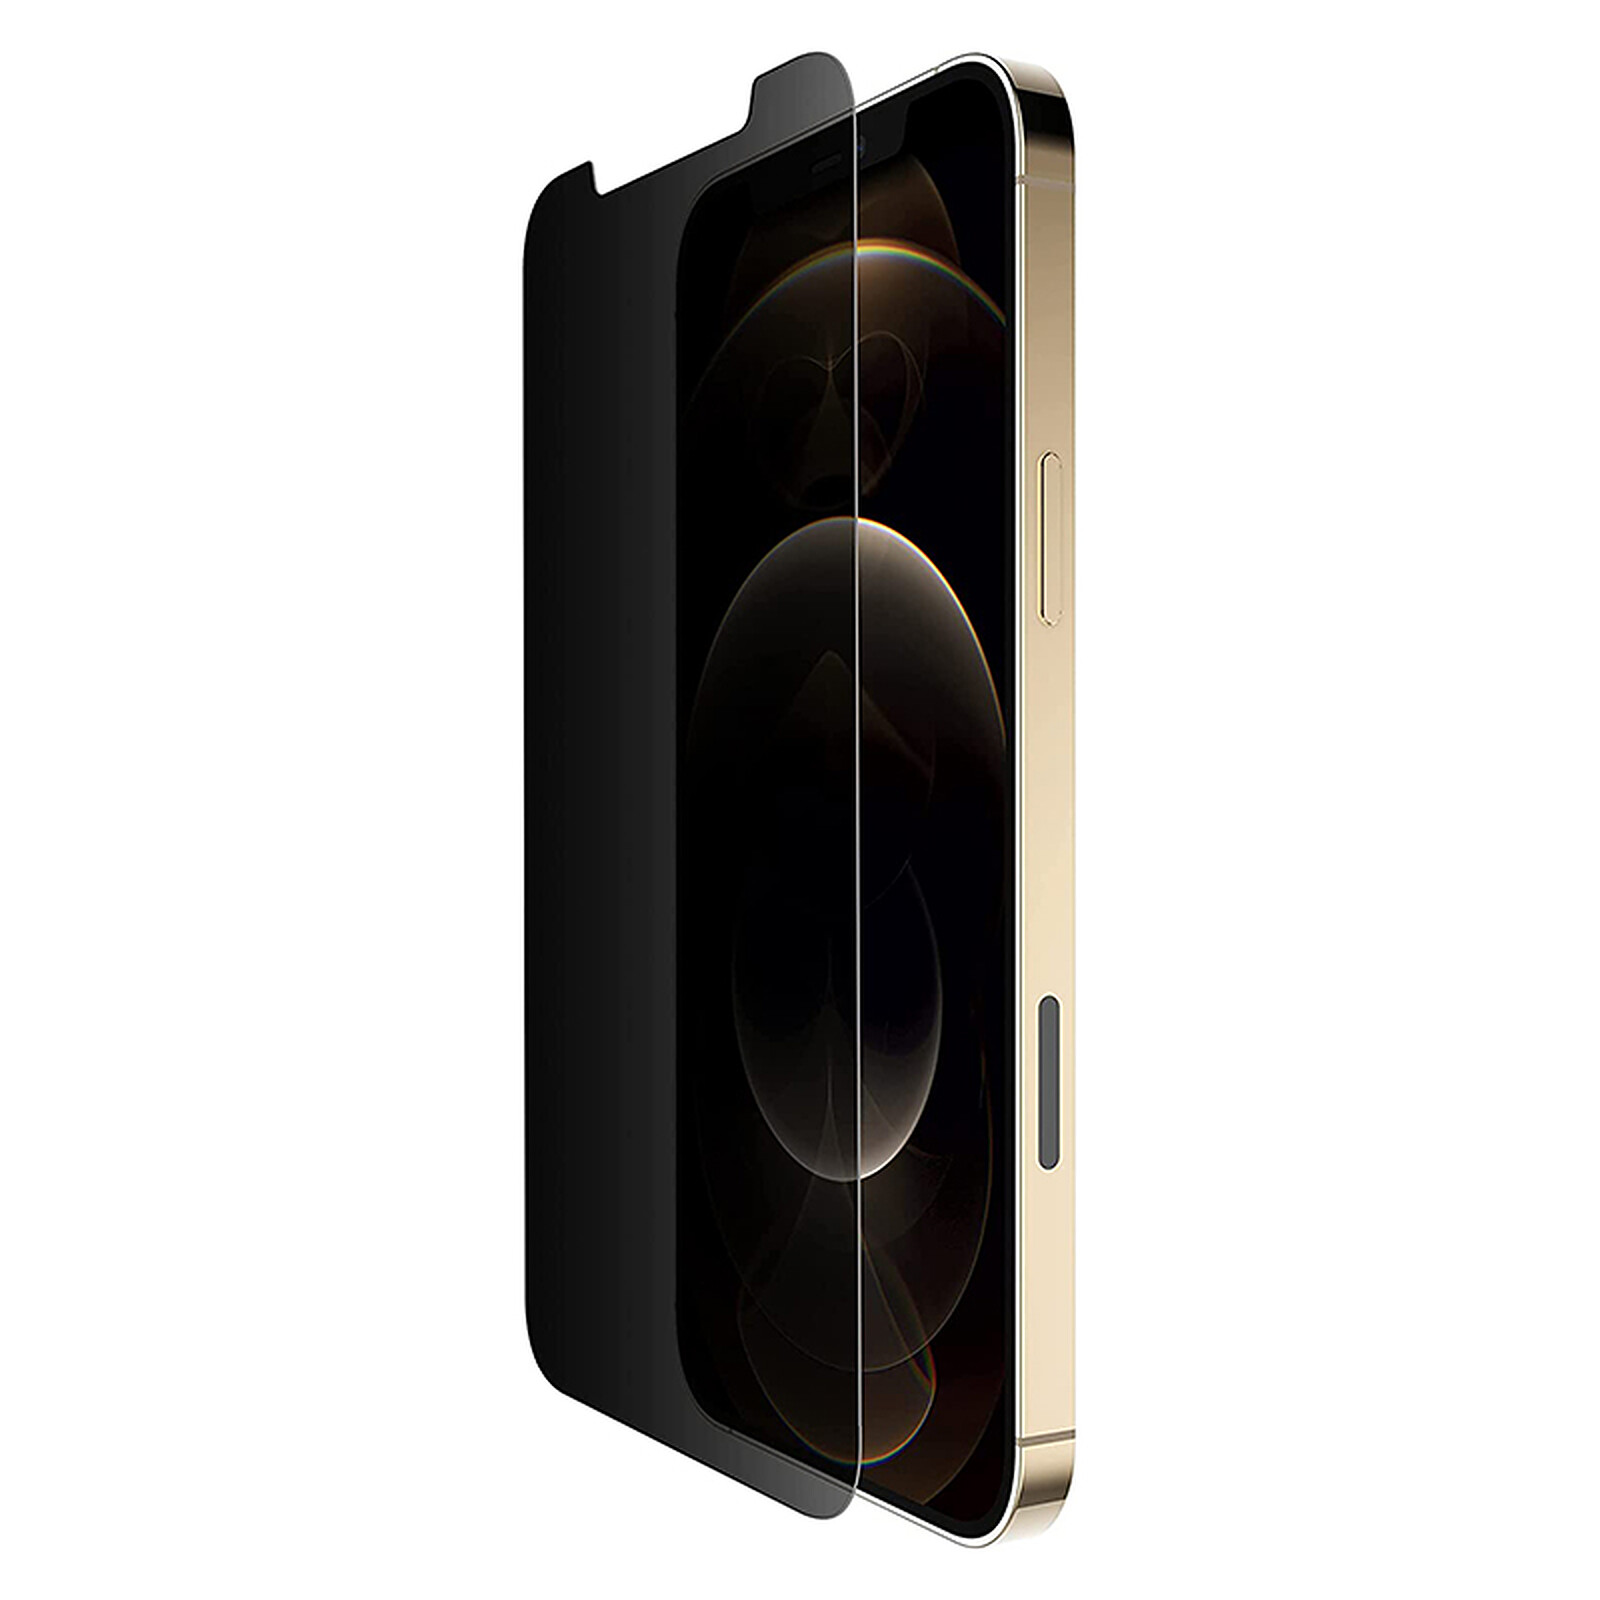 Protège écran en verre Ultraglass privacy de Belkin pour iPhone 12